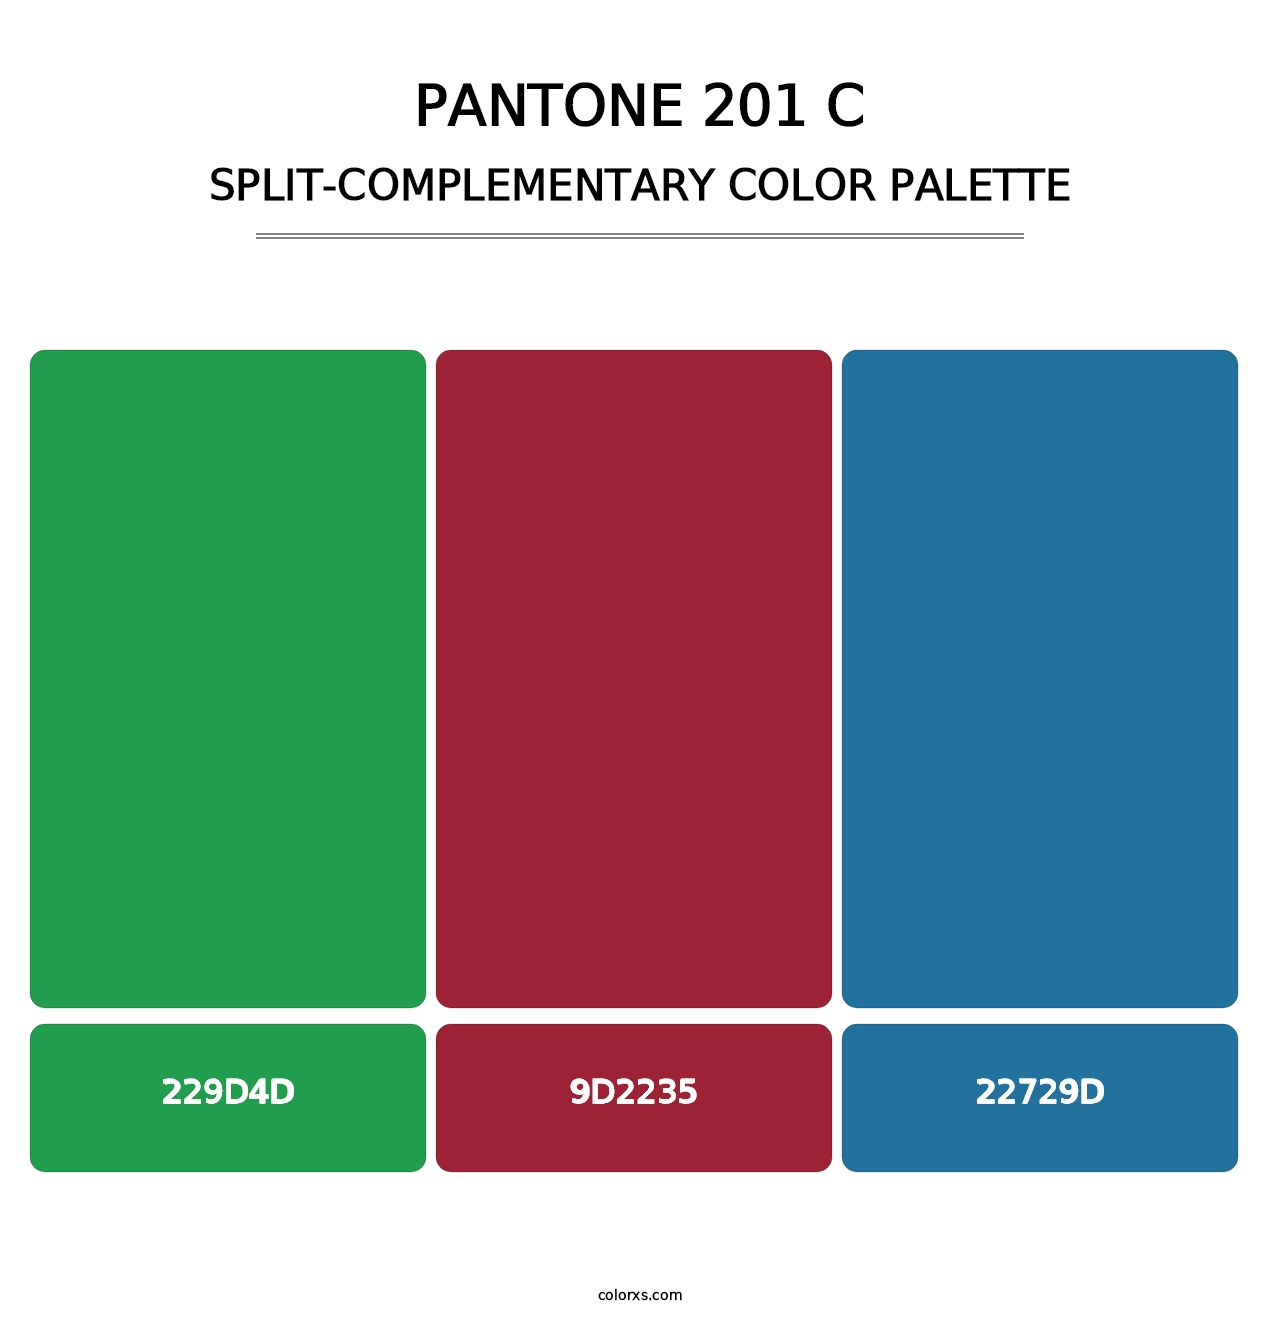 PANTONE 201 C - Split-Complementary Color Palette